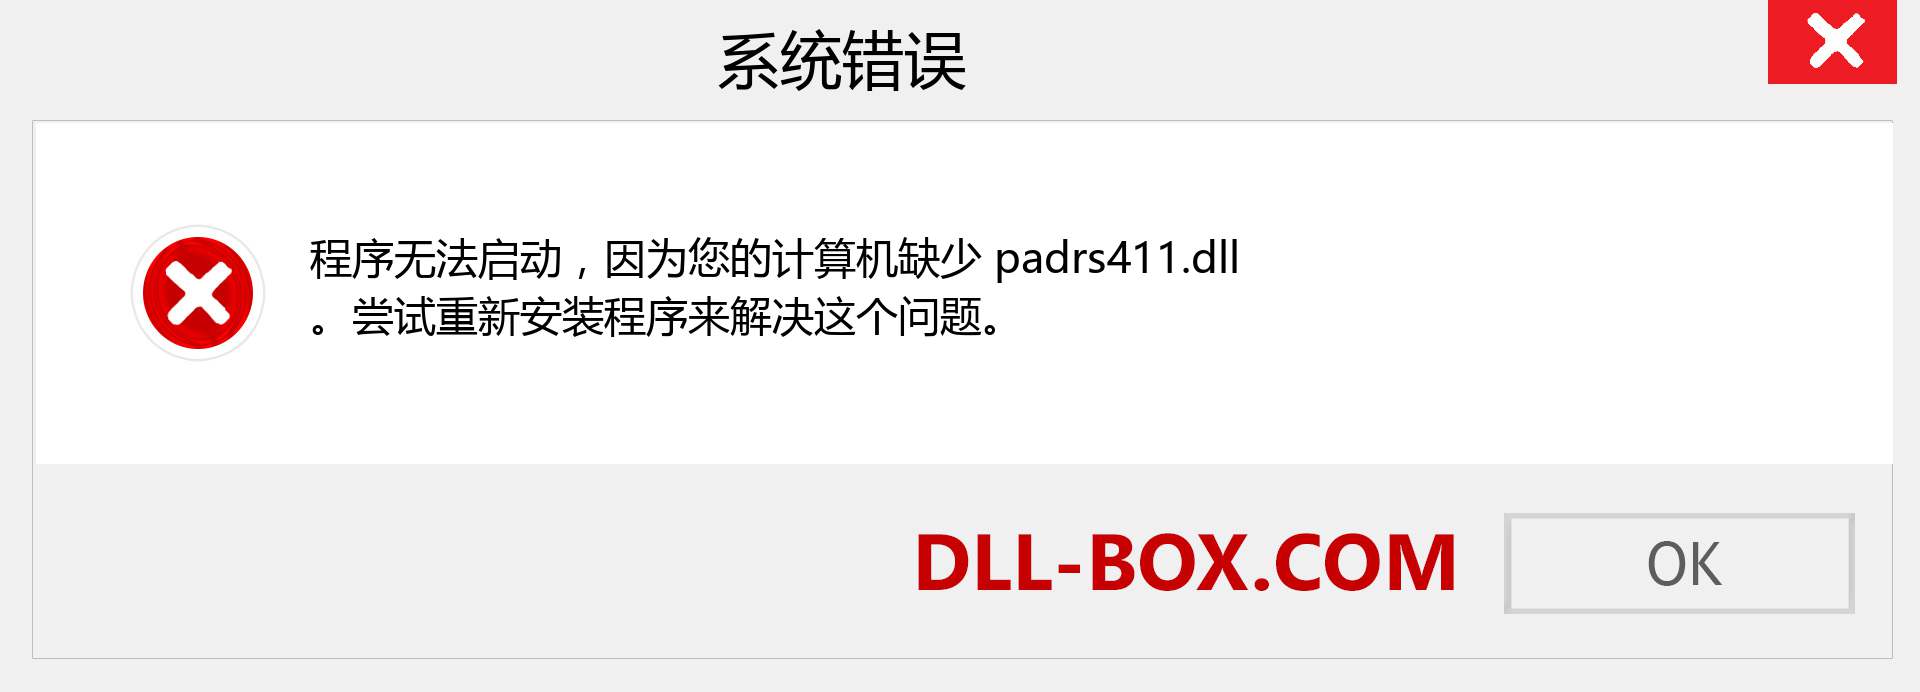 padrs411.dll 文件丢失？。 适用于 Windows 7、8、10 的下载 - 修复 Windows、照片、图像上的 padrs411 dll 丢失错误